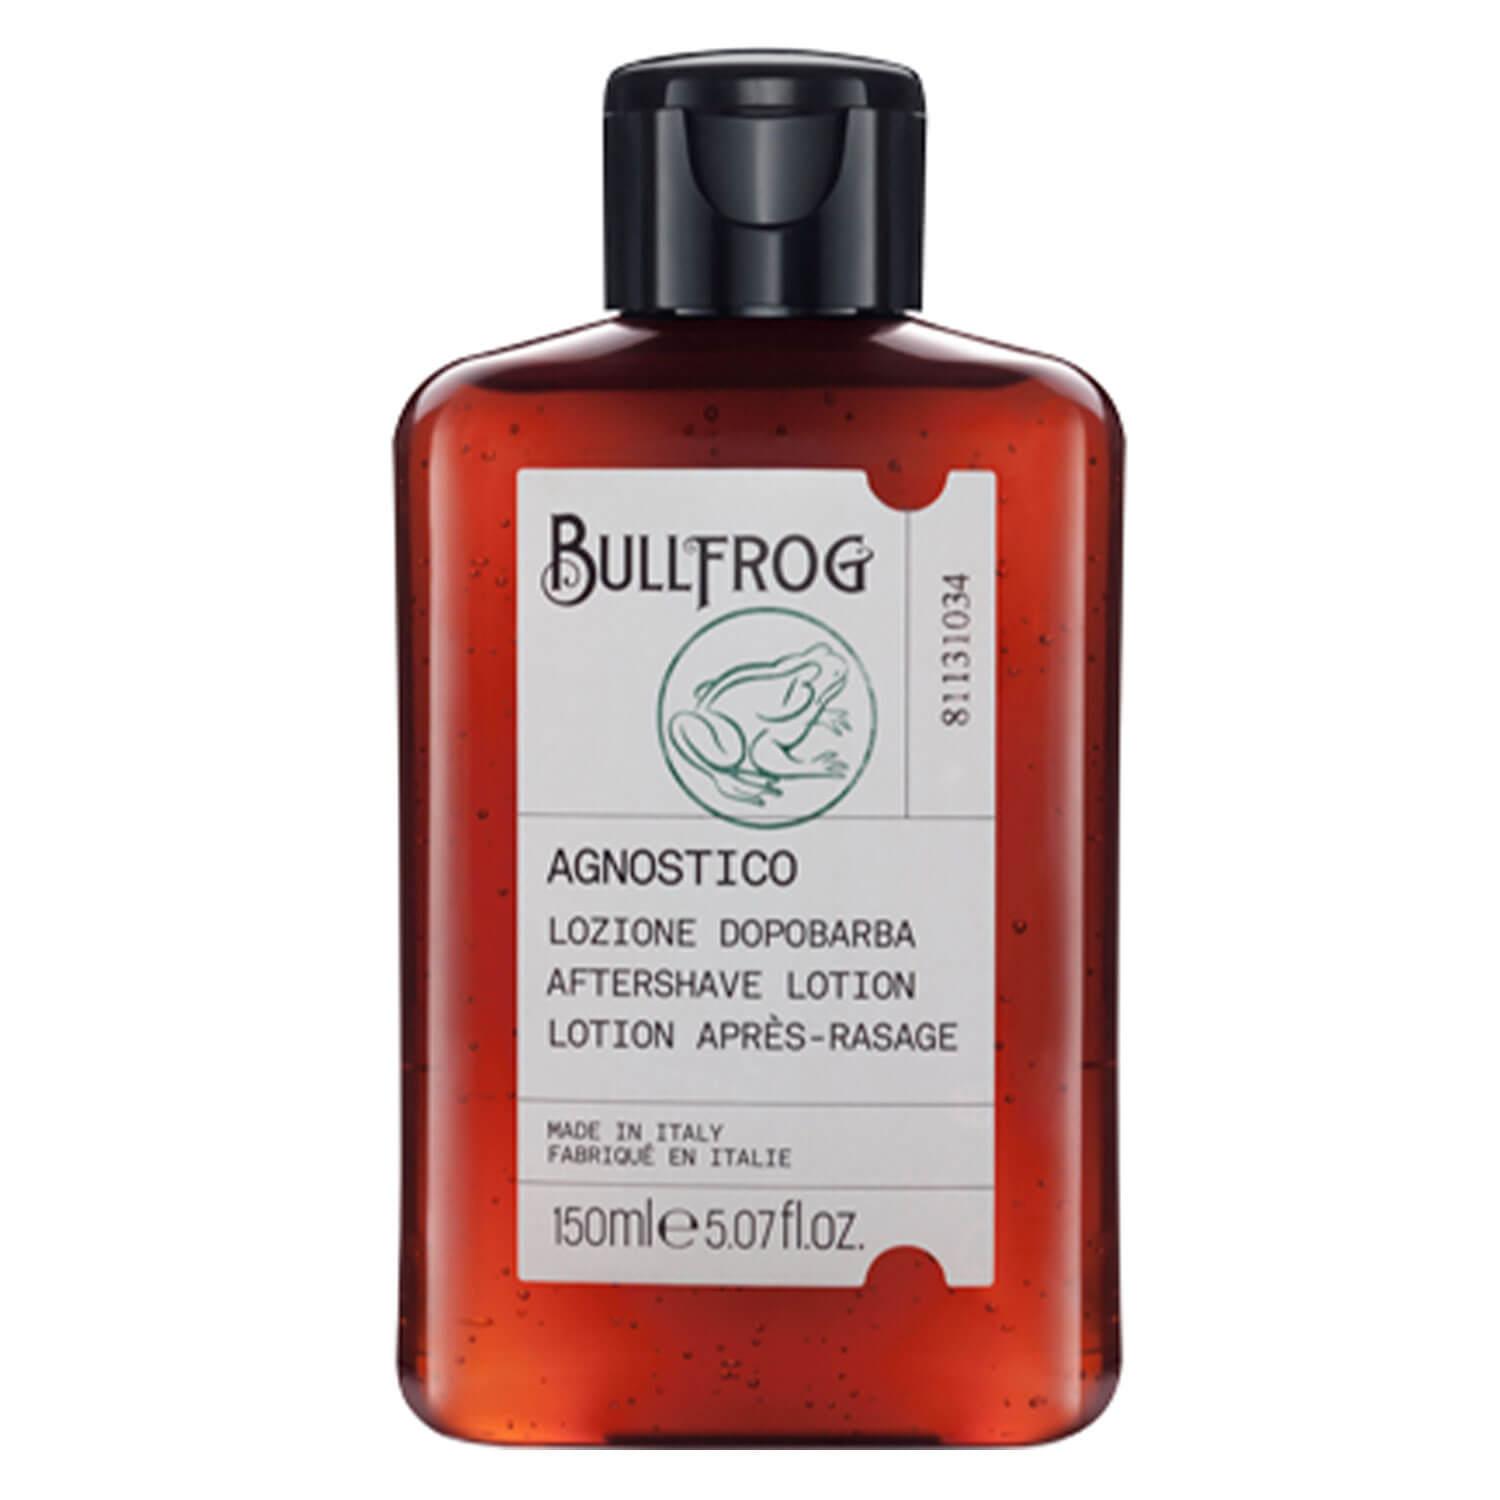 BULLFROG - Agnostico Aftershave Lotion